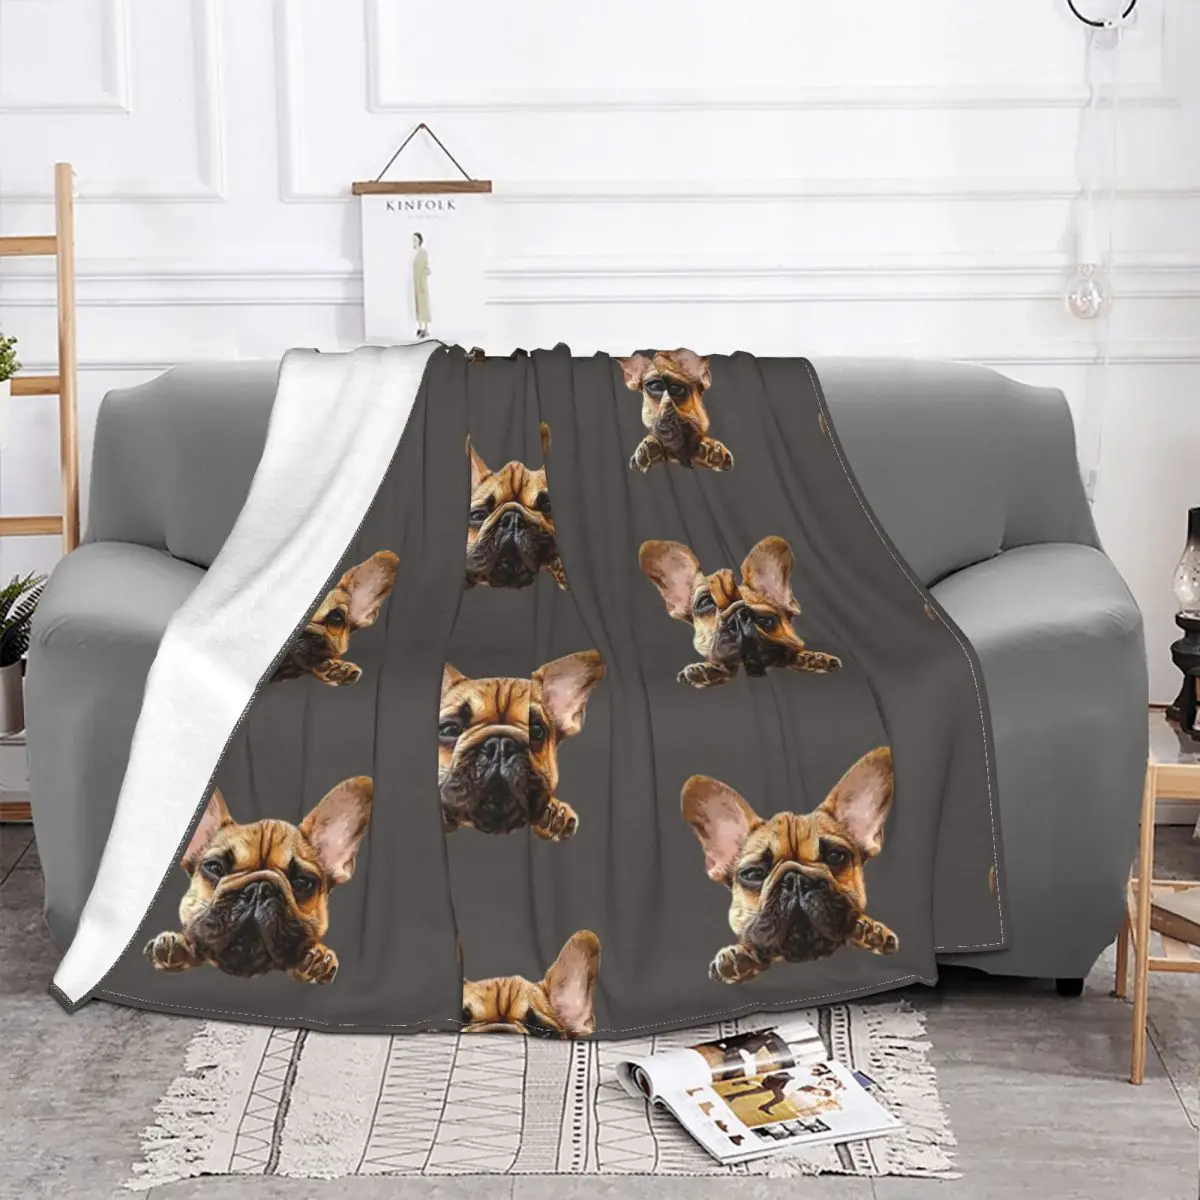 Одеяло для собак French Bulldog Frenchie Cuteness, фланелевое летнее одеяло для щенков, легкие пледы для дома, покрывала для постельных принадлежностей в спальне - 1